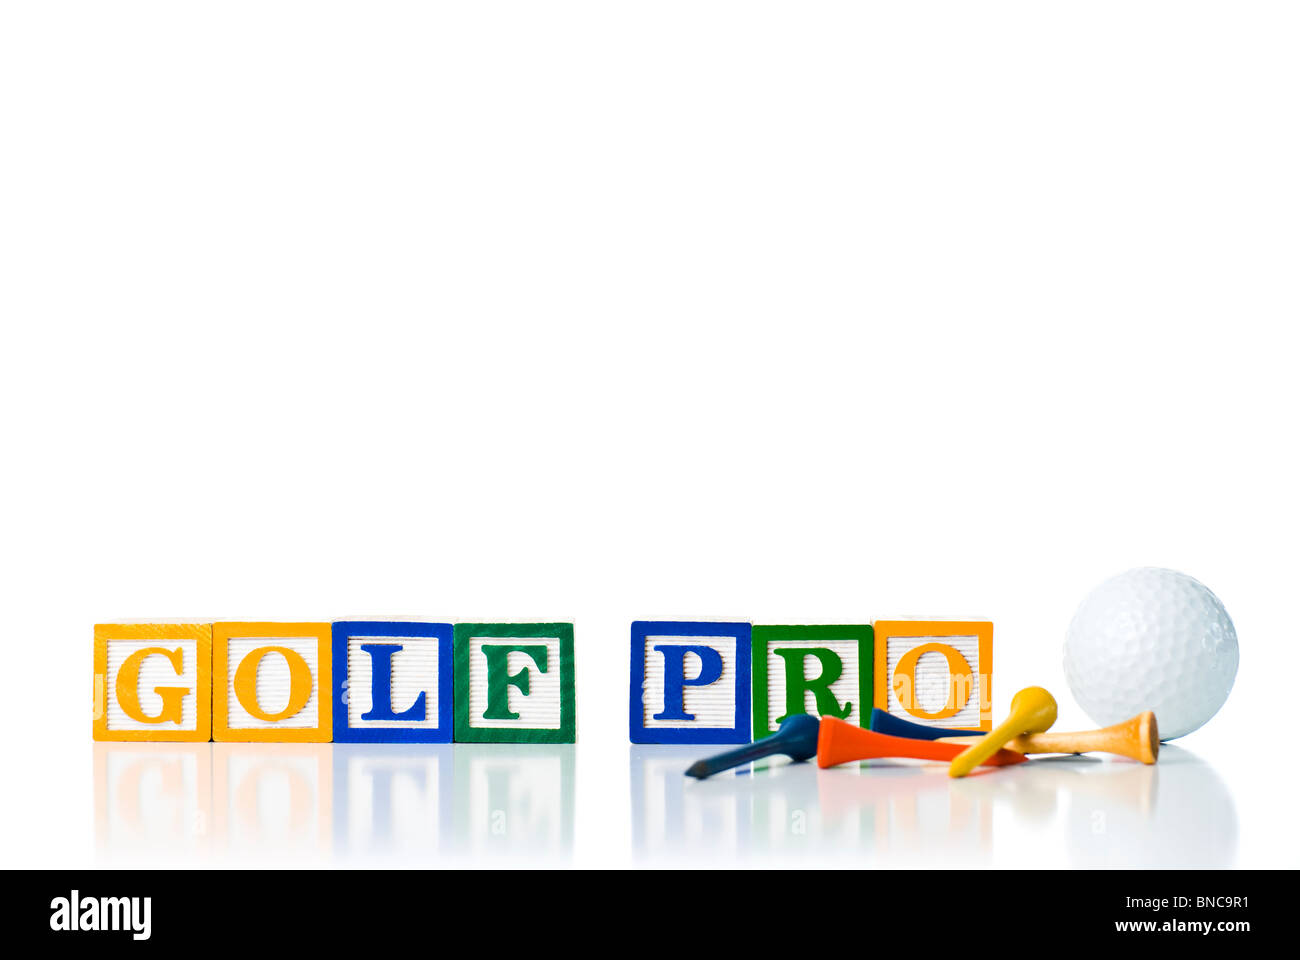 Colorata per bambini ortografia blocchi GOLF PRO con tee da golf e sfera Foto Stock